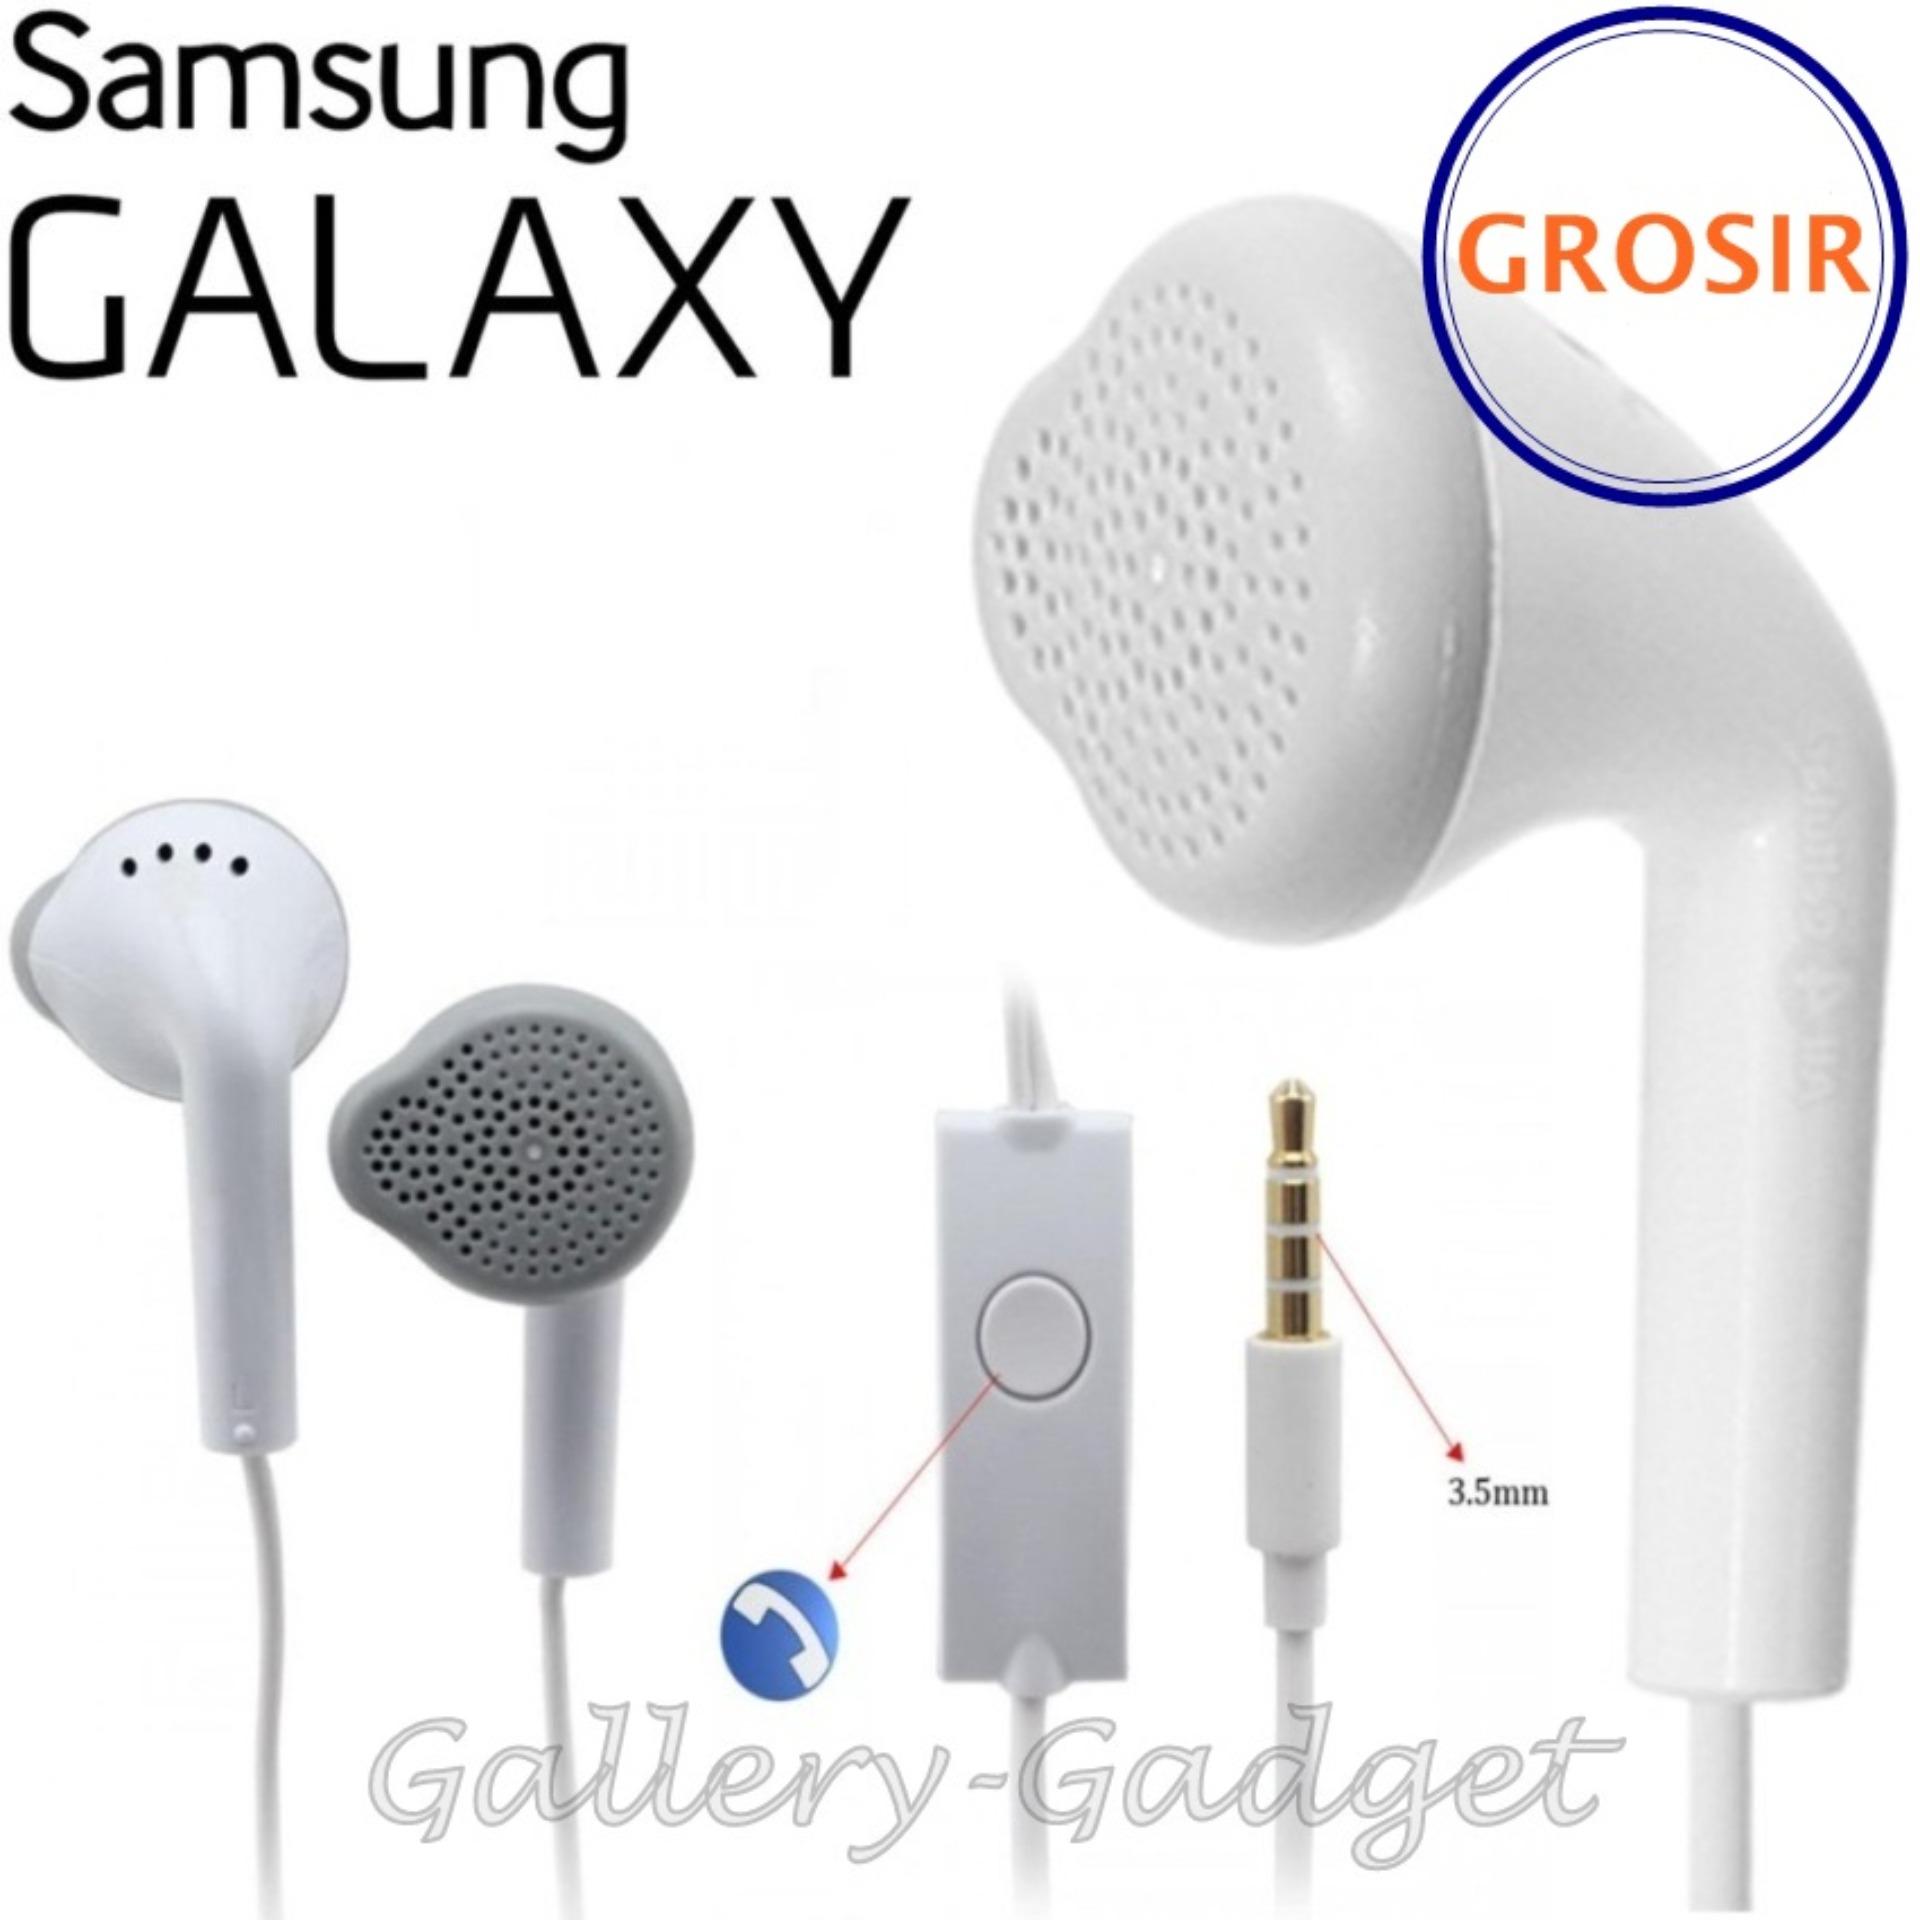 Samsung Handsfree / Headphones / Earphone / Haedset Galaxy Young Gallery Gadget - Putih